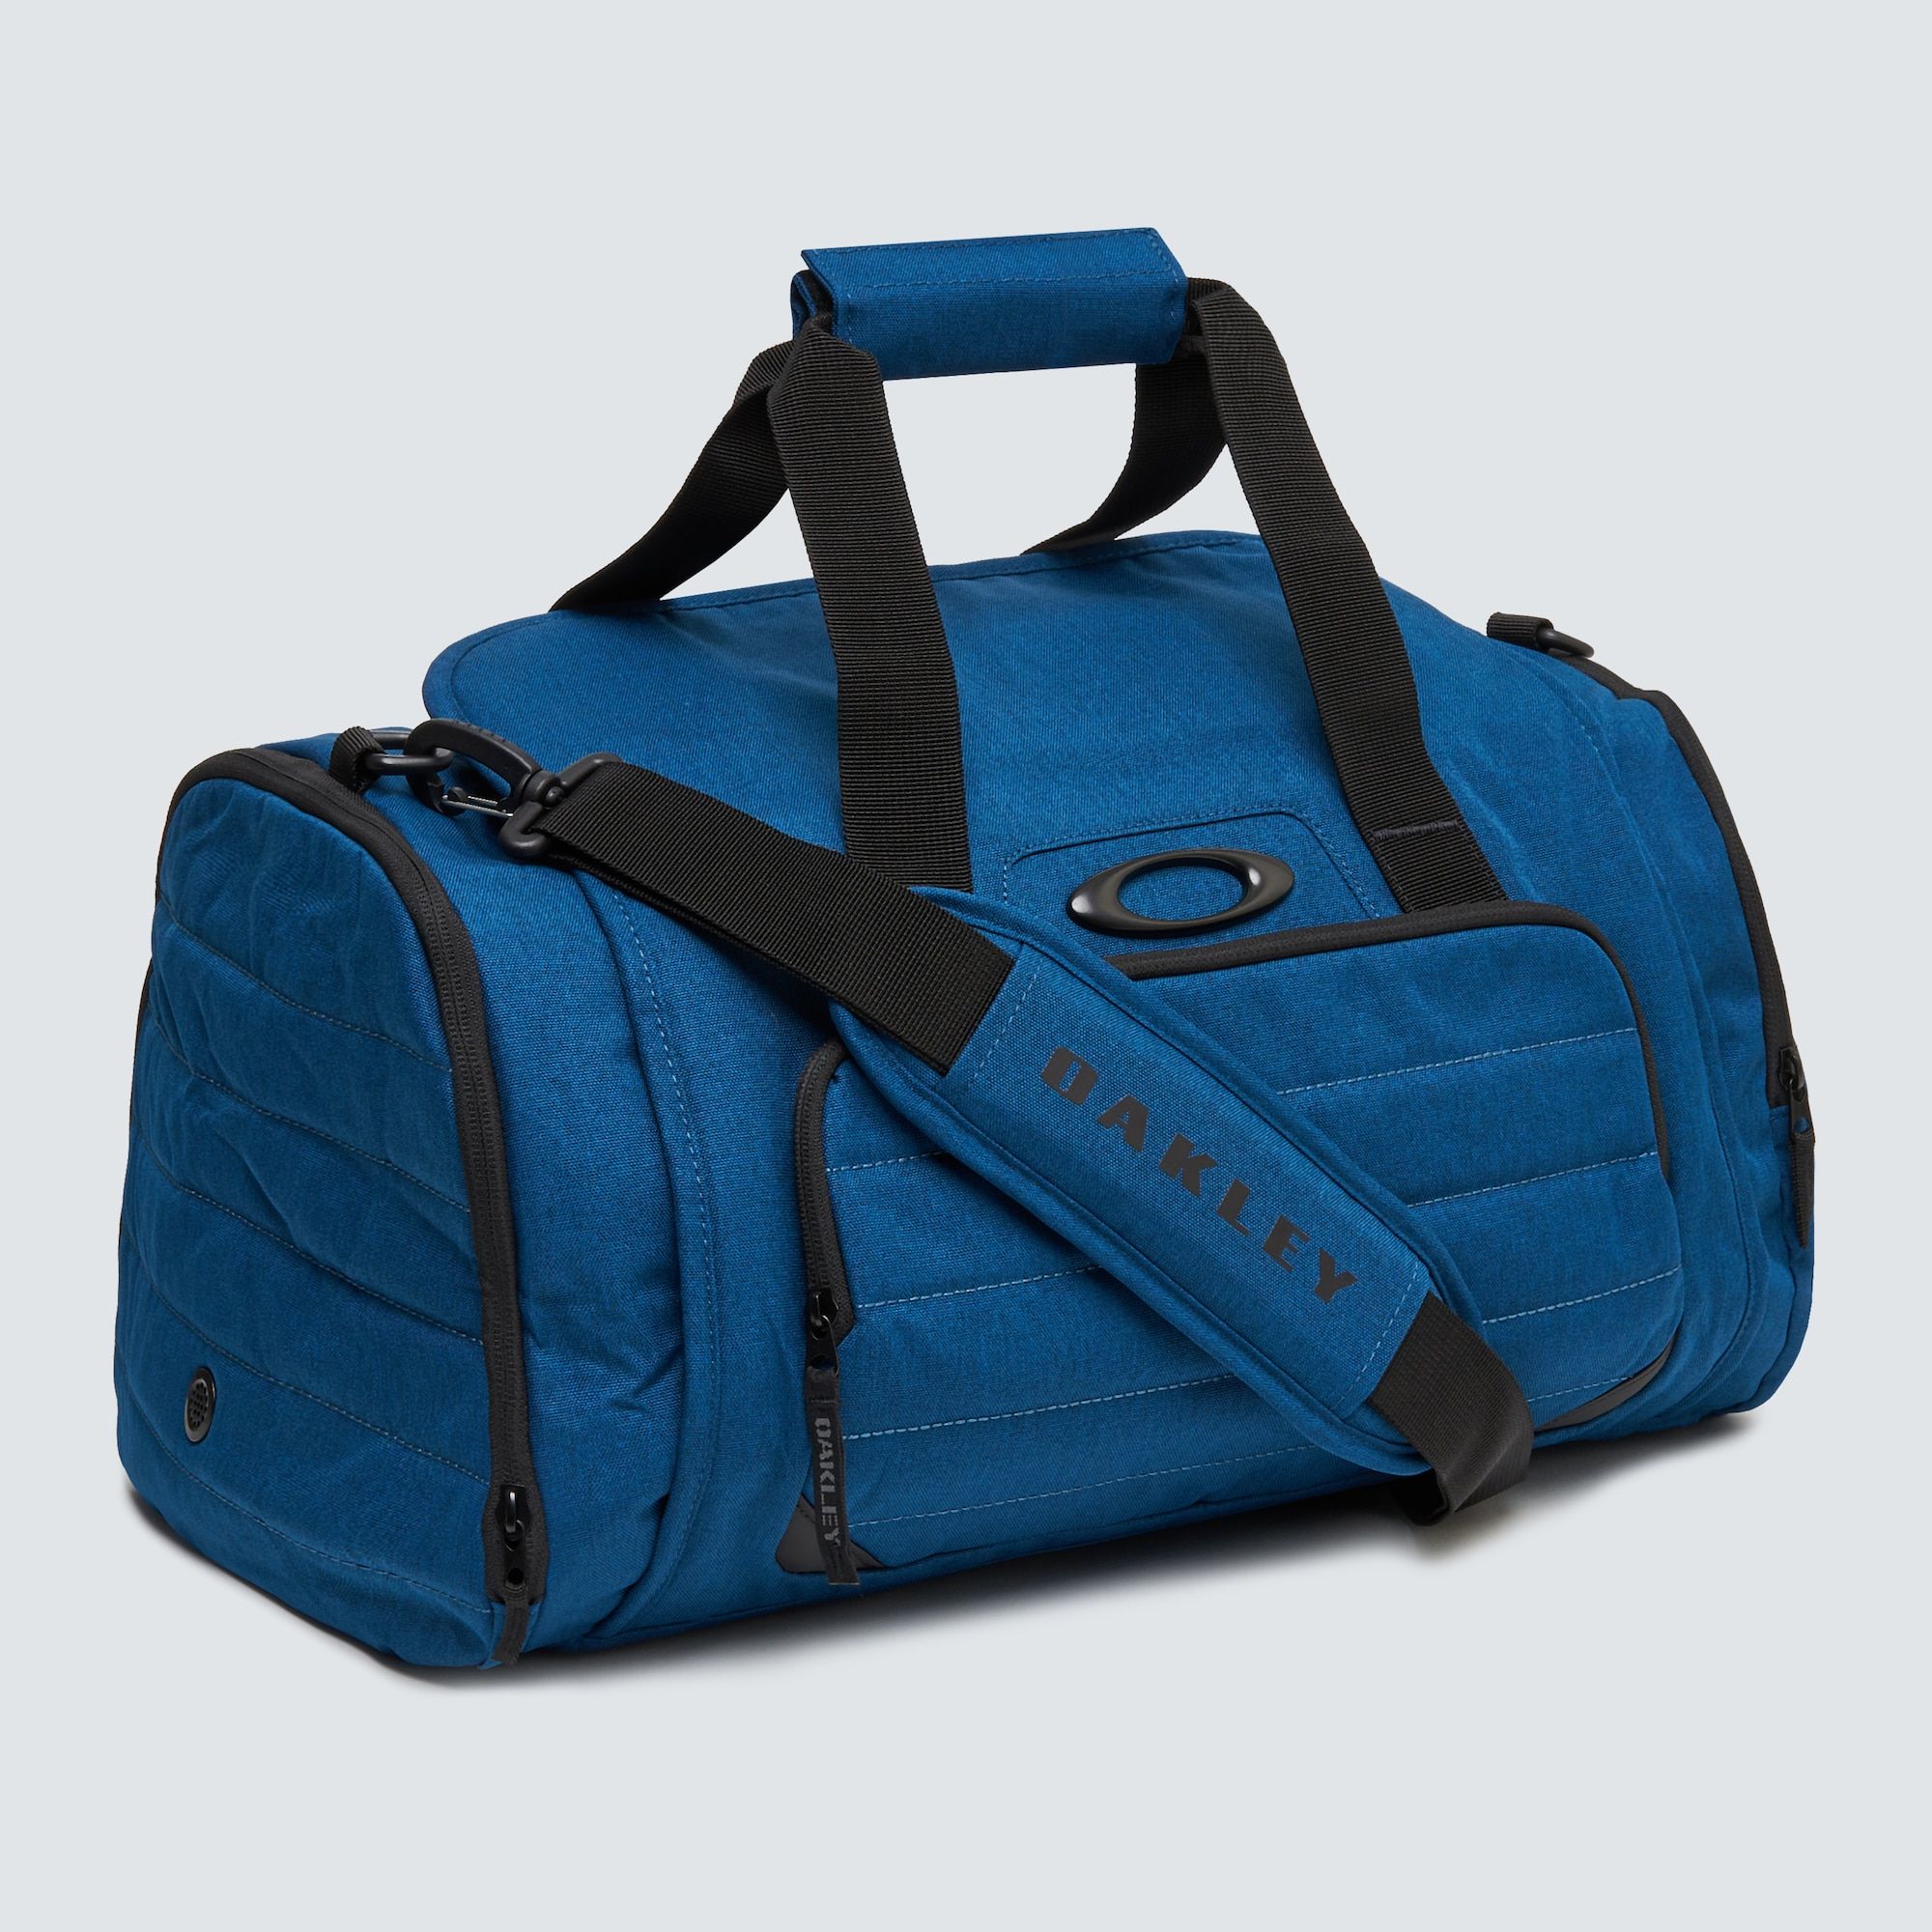  Oakley Enduro 3.0 Duffel Bag - Poseidon 